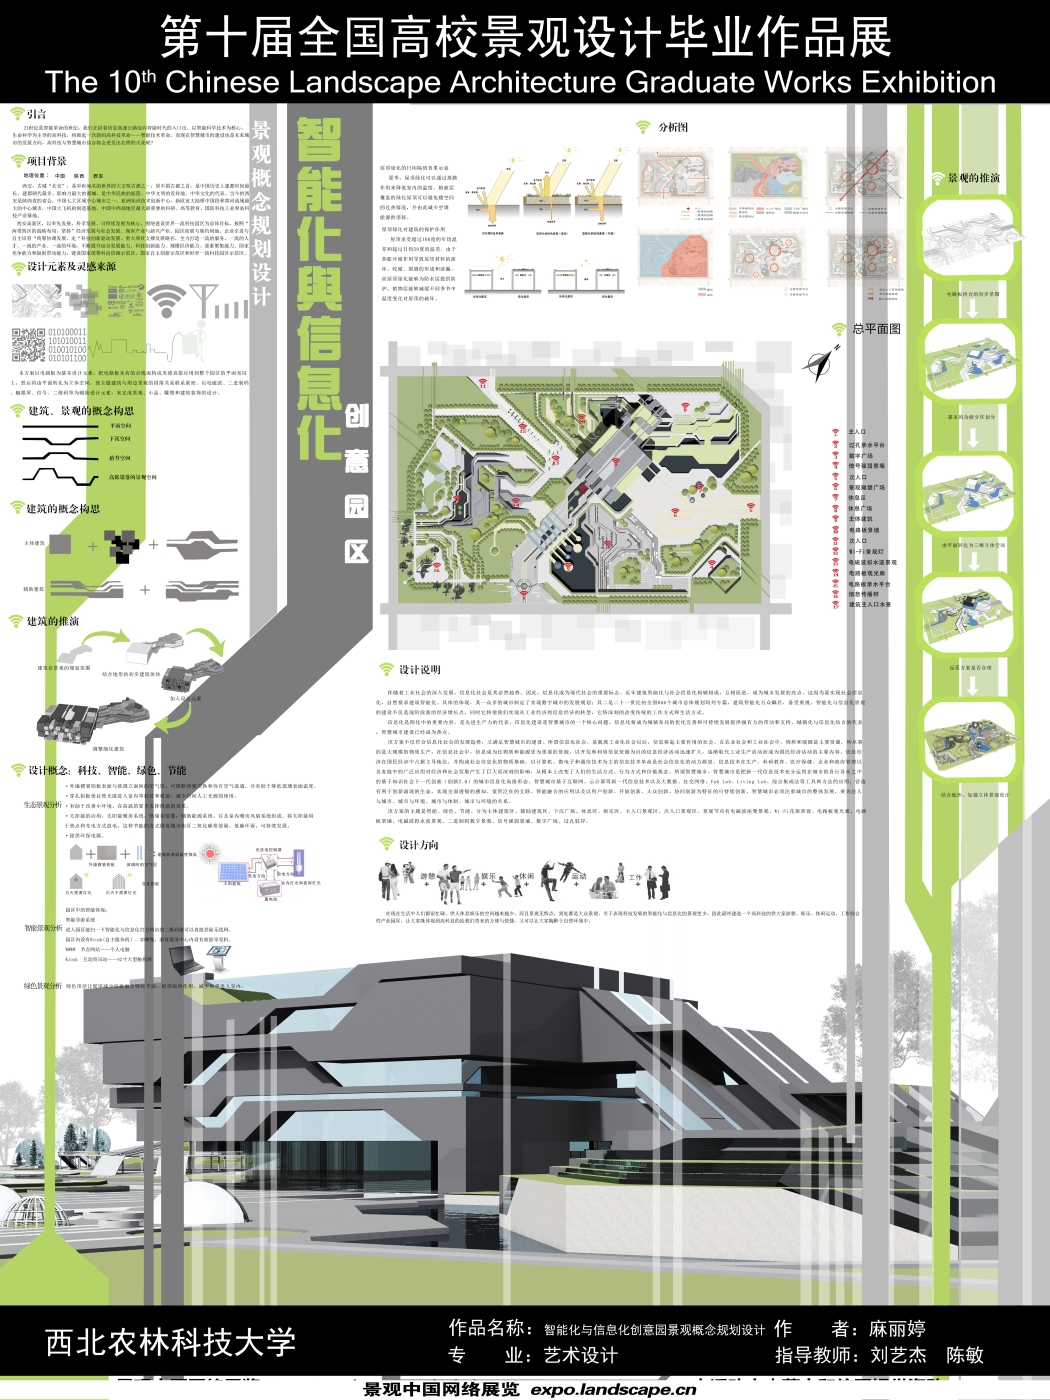 智能化与信息化创意园区景观概念规划设计-1